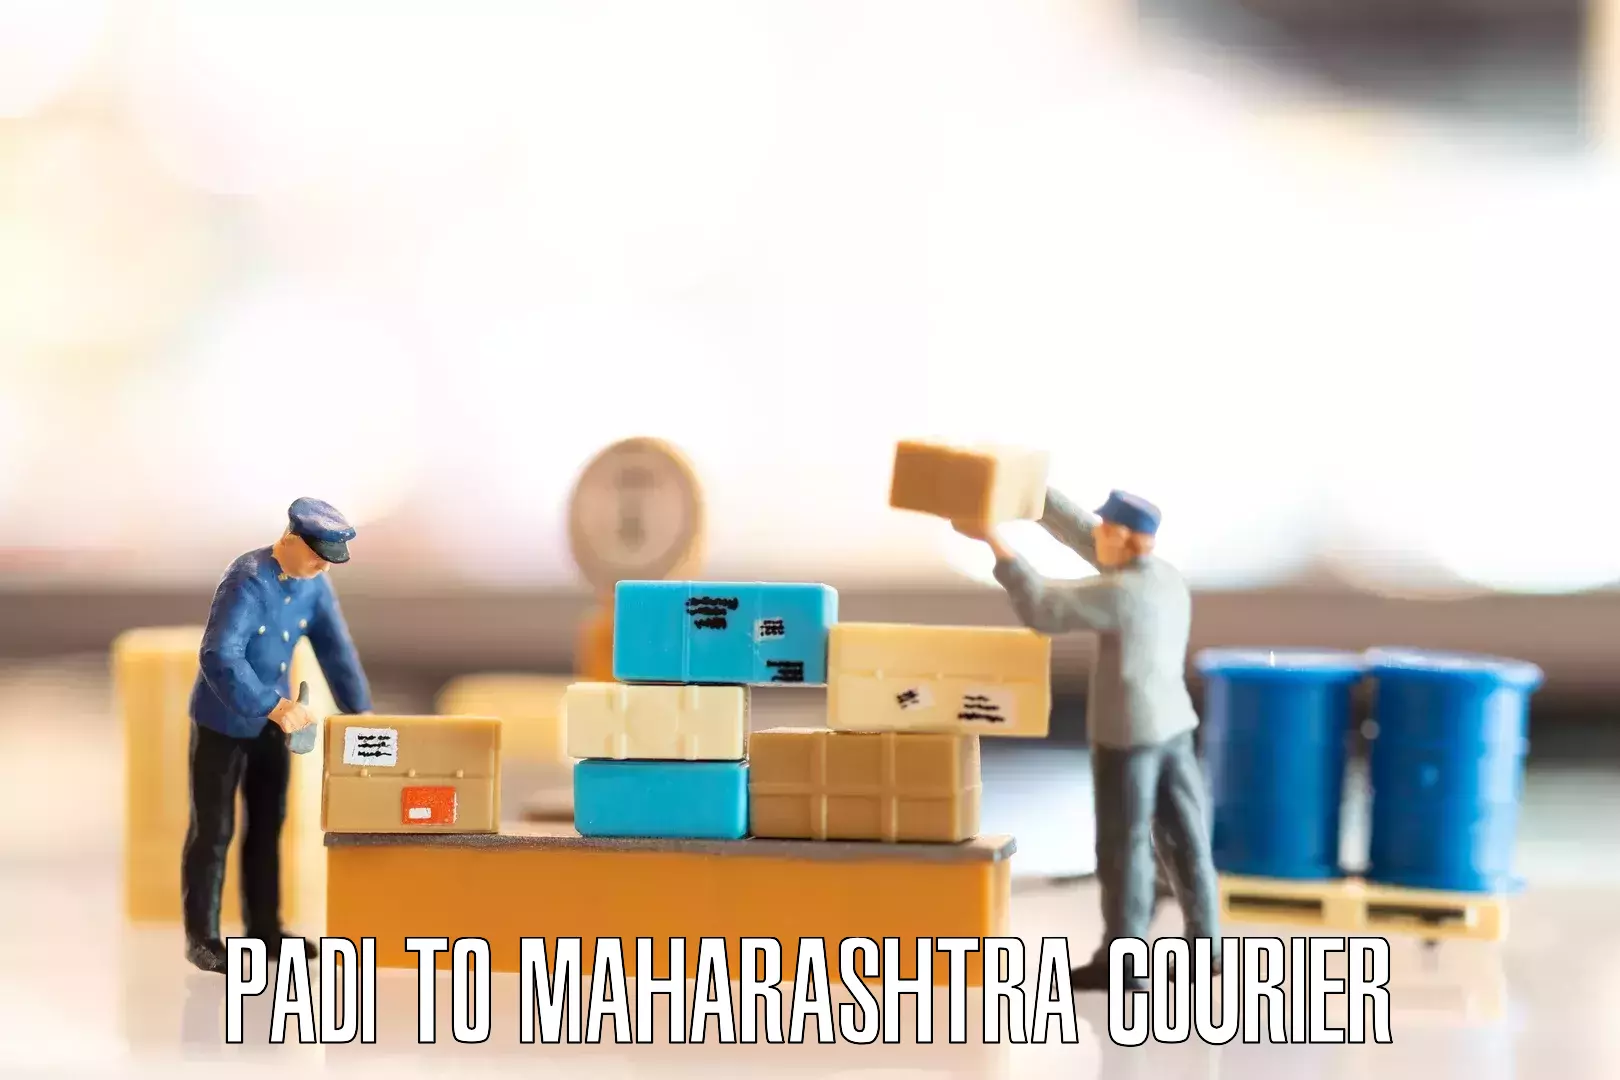 Furniture logistics Padi to Maharashtra